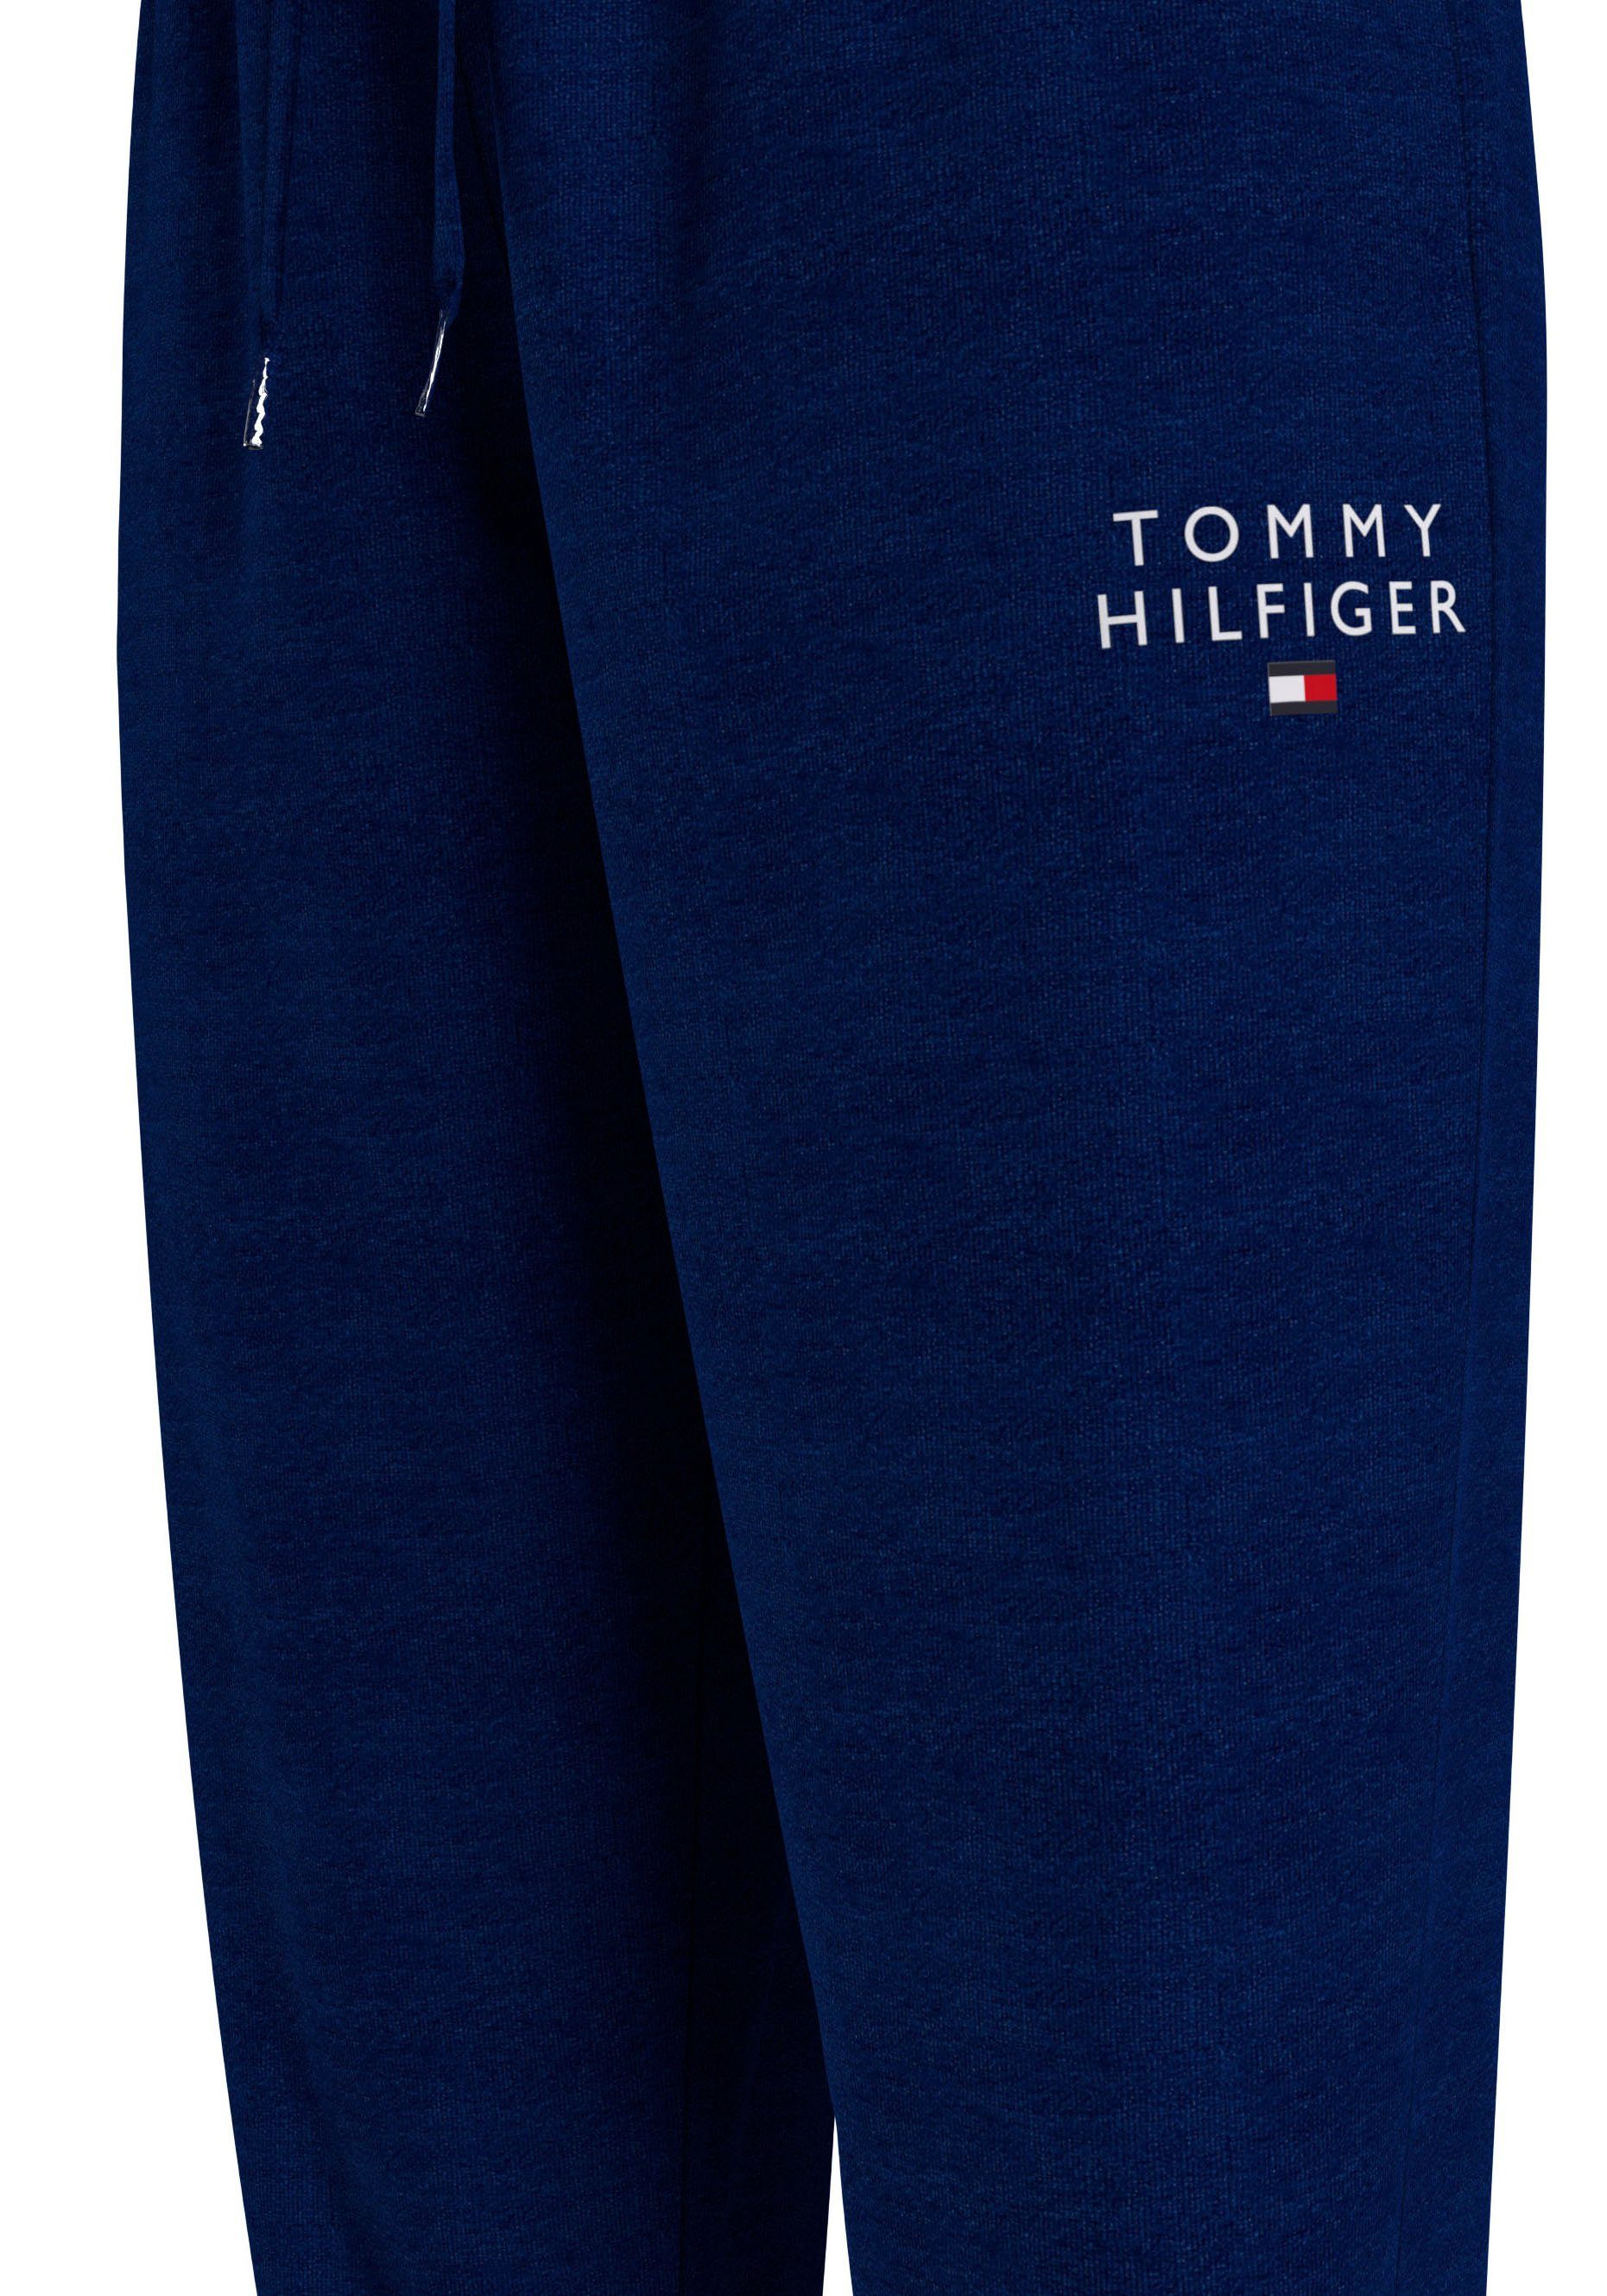 PANTS Hilfiger Tommy TRACK mit Markenlogo-Aufdruck Underwear Hilfiger Sweathose Tommy